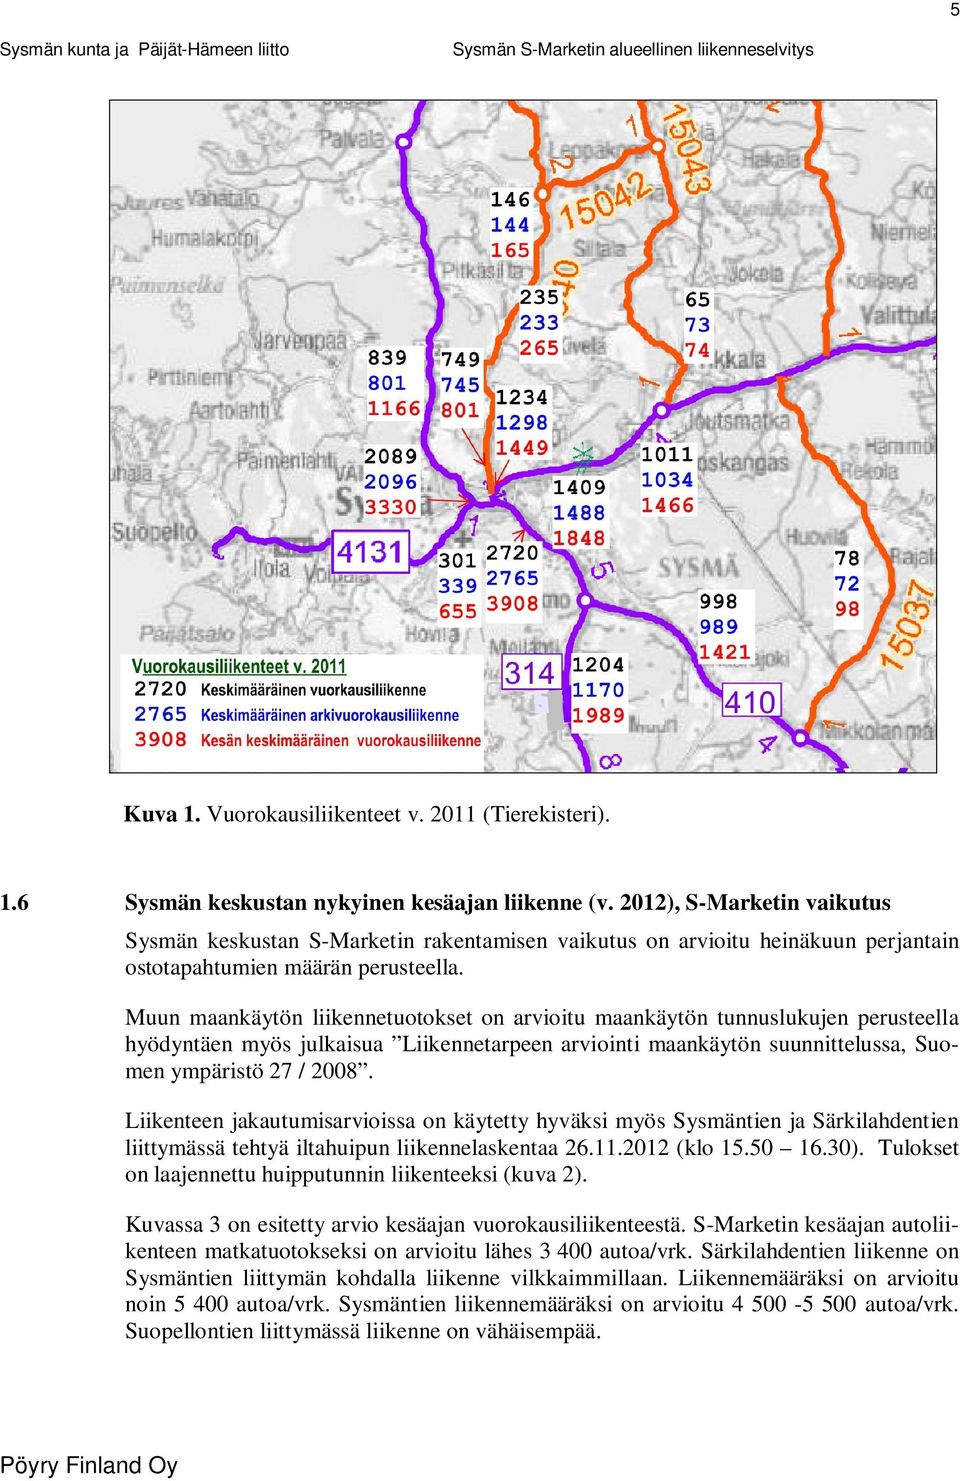 Muun maankäytön liikennetuotokset on arvioitu maankäytön tunnuslukujen perusteella hyödyntäen myös julkaisua Liikennetarpeen arviointi maankäytön suunnittelussa, Suomen ympäristö 27 / 2008.